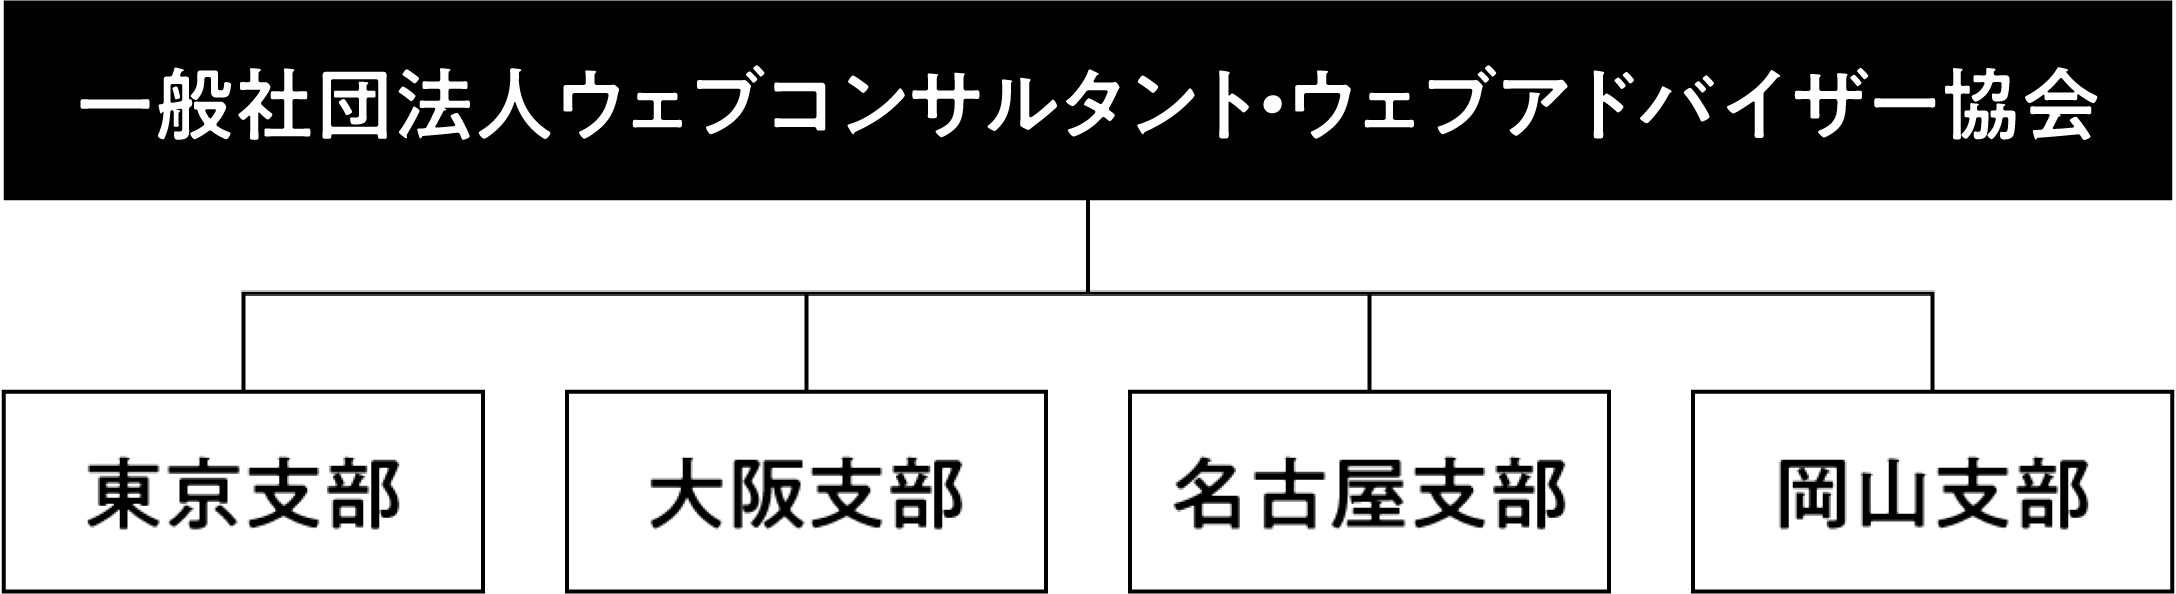 WebCAは「東京支部」「大阪支部」「名古屋支部」「岡山支部」からなっています。